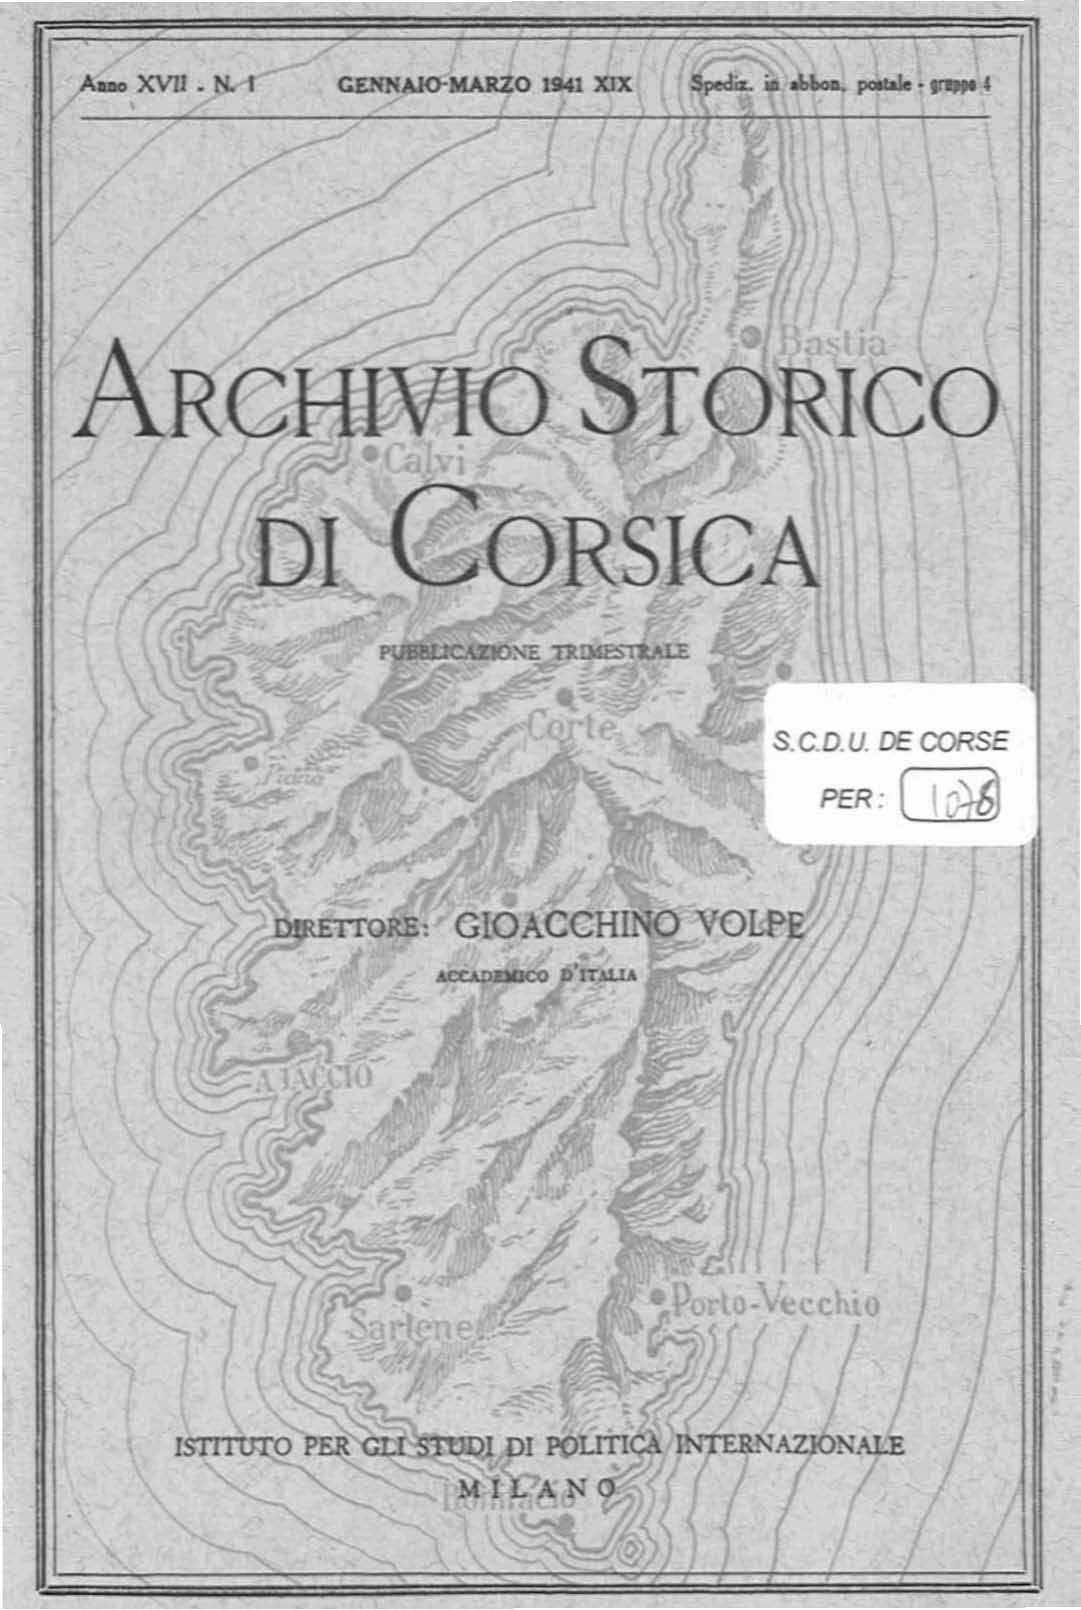 >Archivio Storico di Corsica (1941)